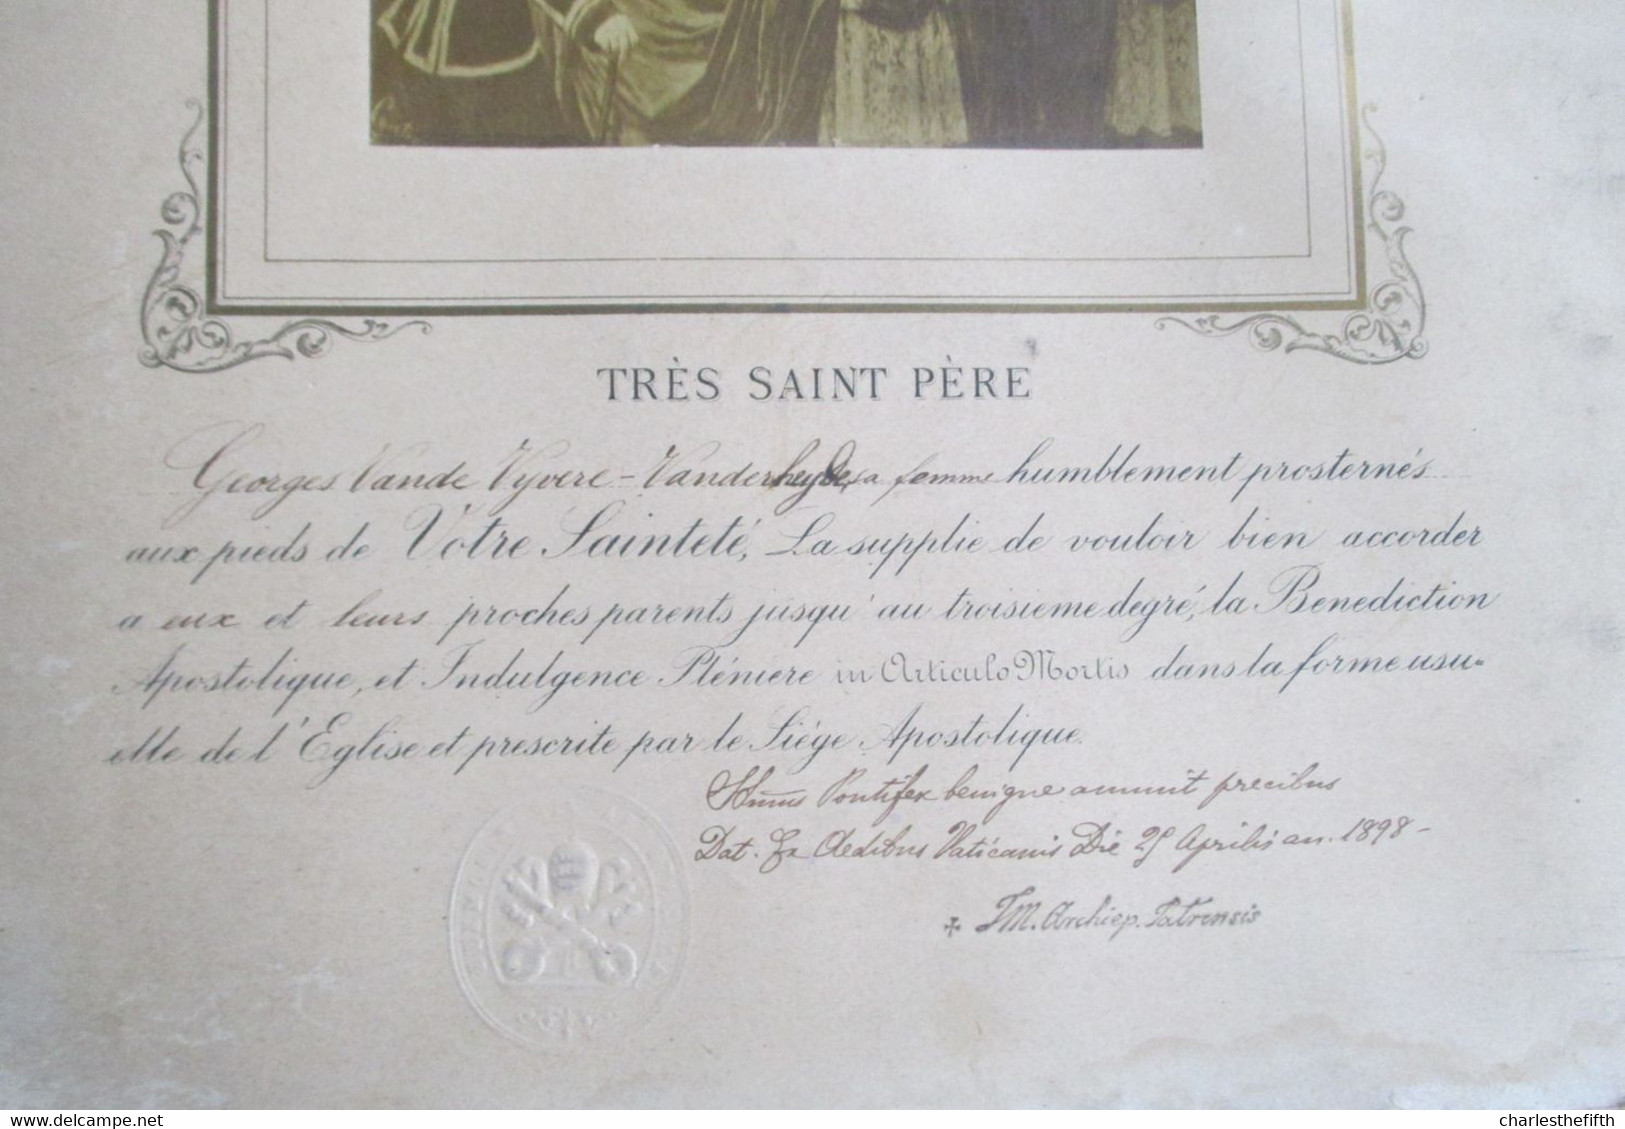 RARE BENEDICTION APOSTOLIQUE PAPE LEO XIII Année 1885 - PHOTO ALBUMINE SIGNEE - TAMPON SEC DU PAPE - à VANDE VYVERE - Oud (voor 1900)